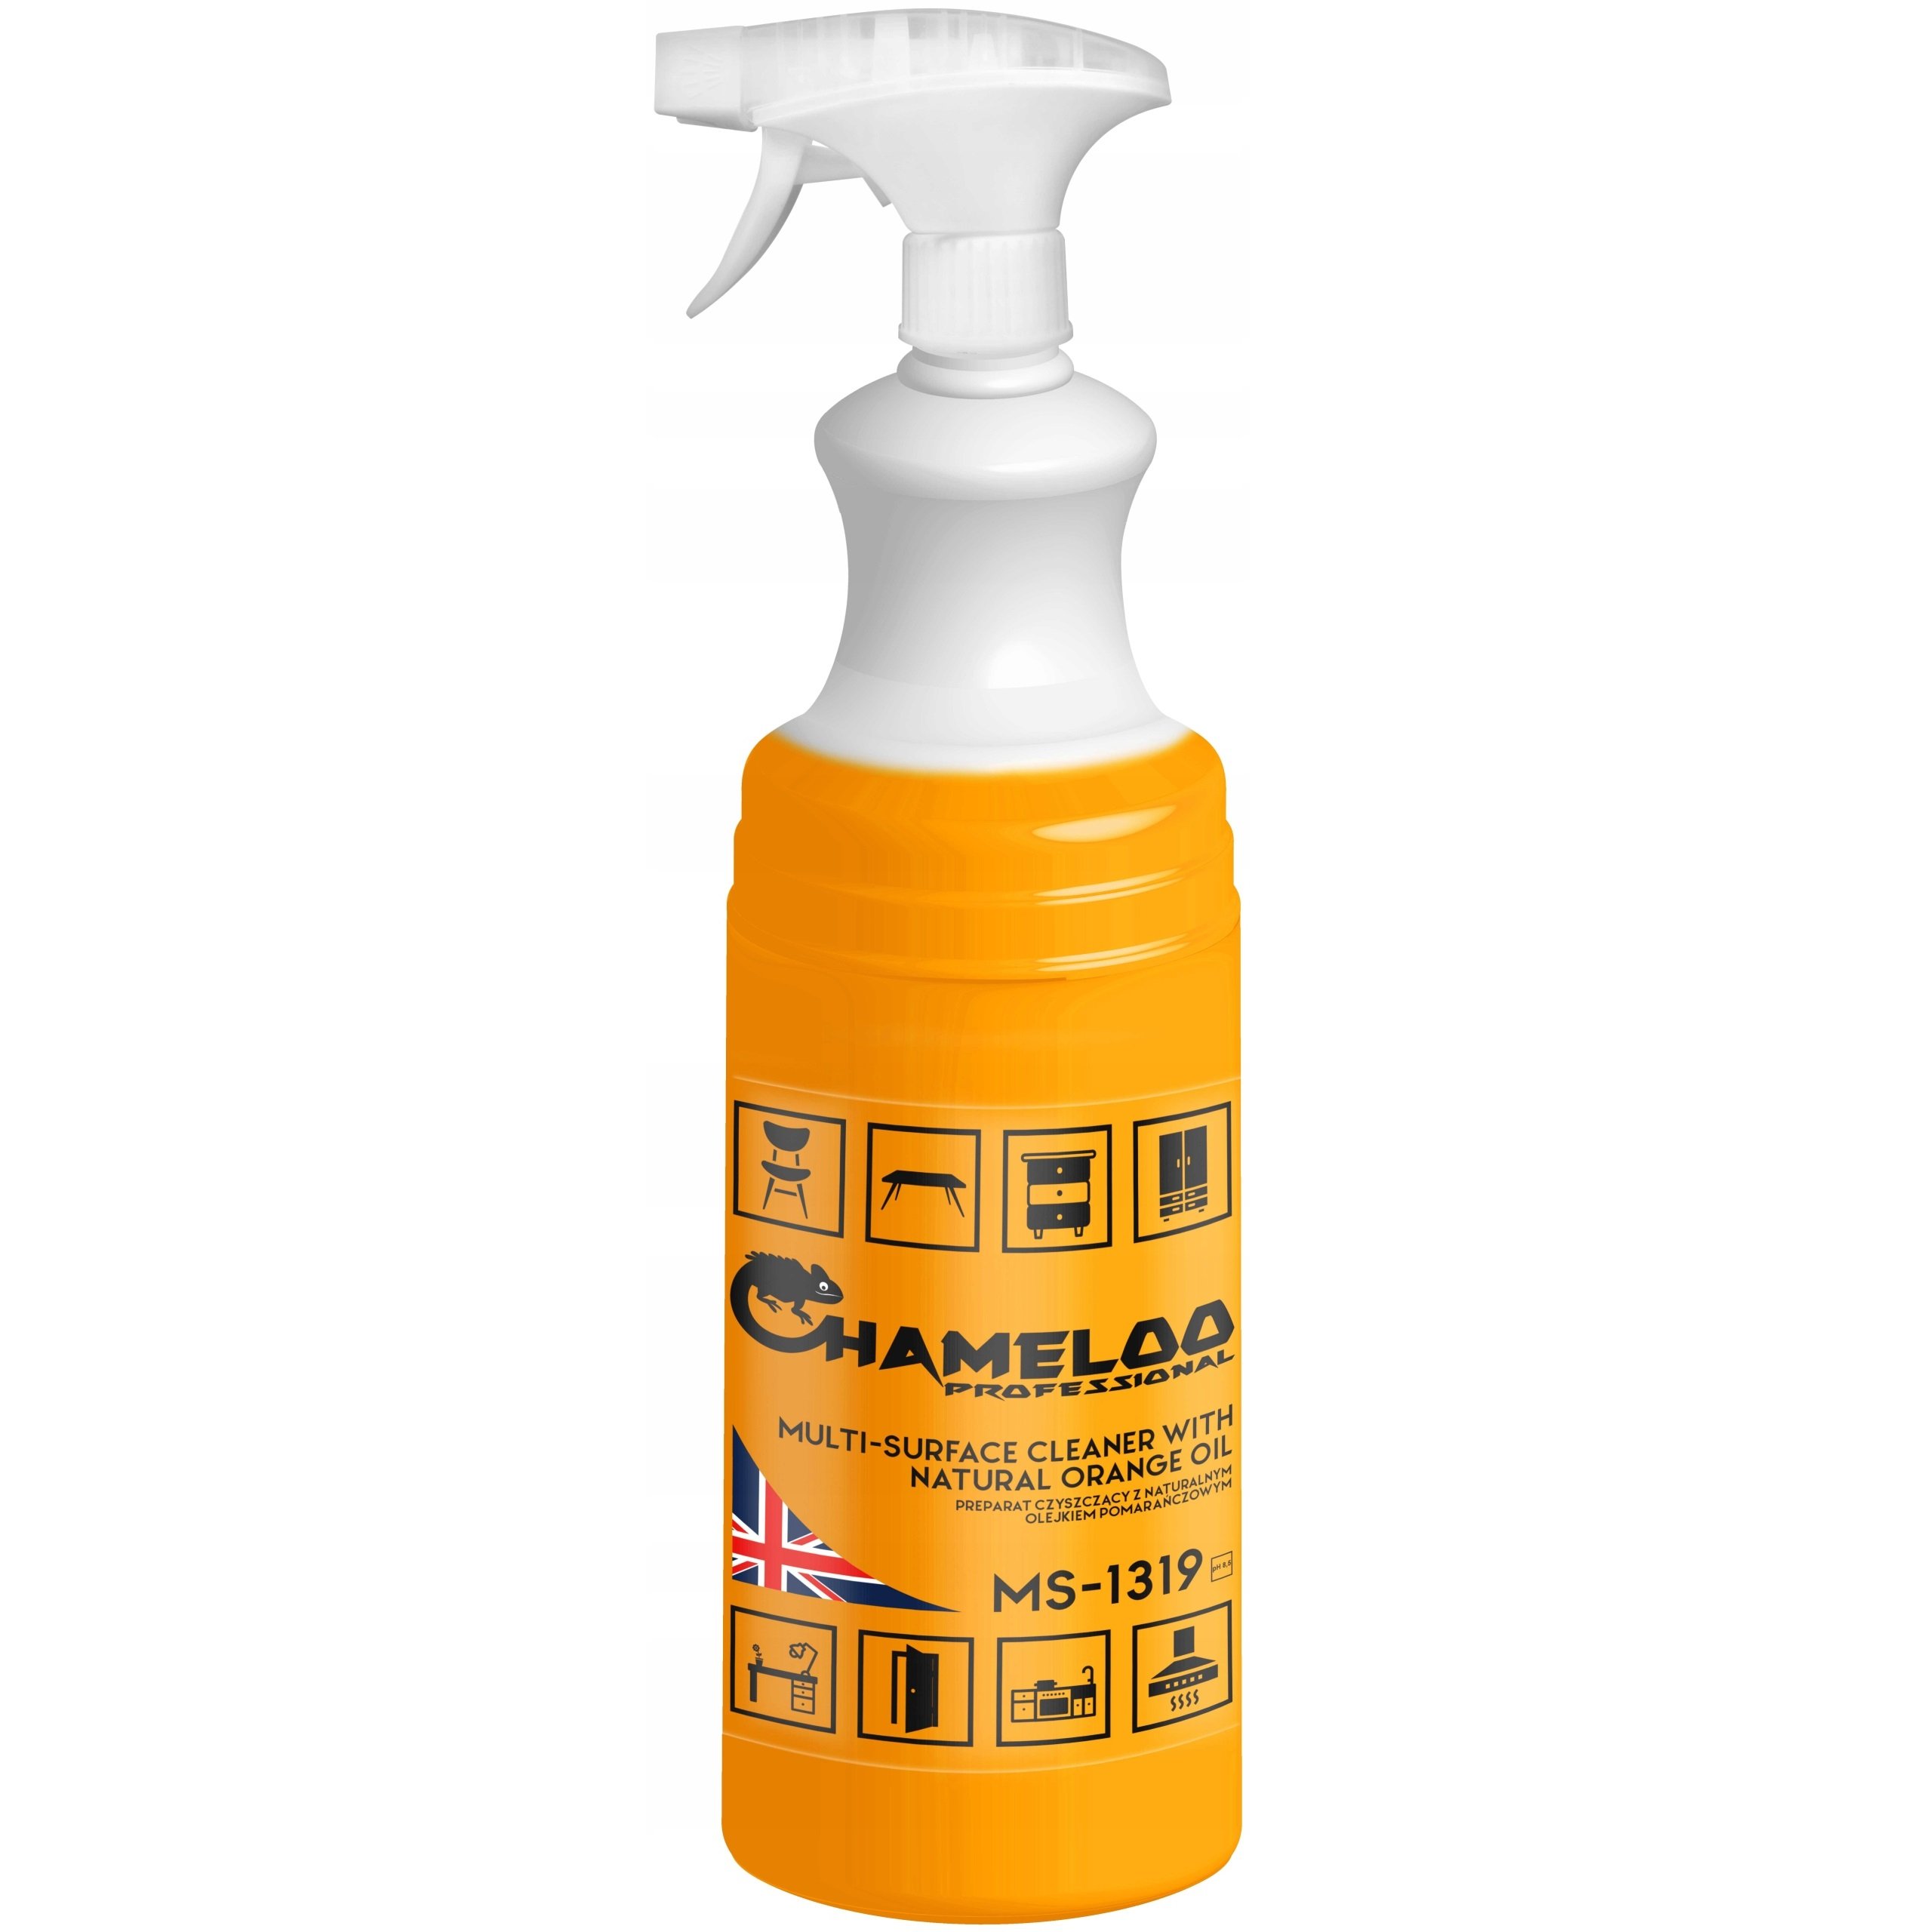 Спрей для чистки поверхностей Chameloo Professional с апельсиновым маслом, 1 л - фото 1